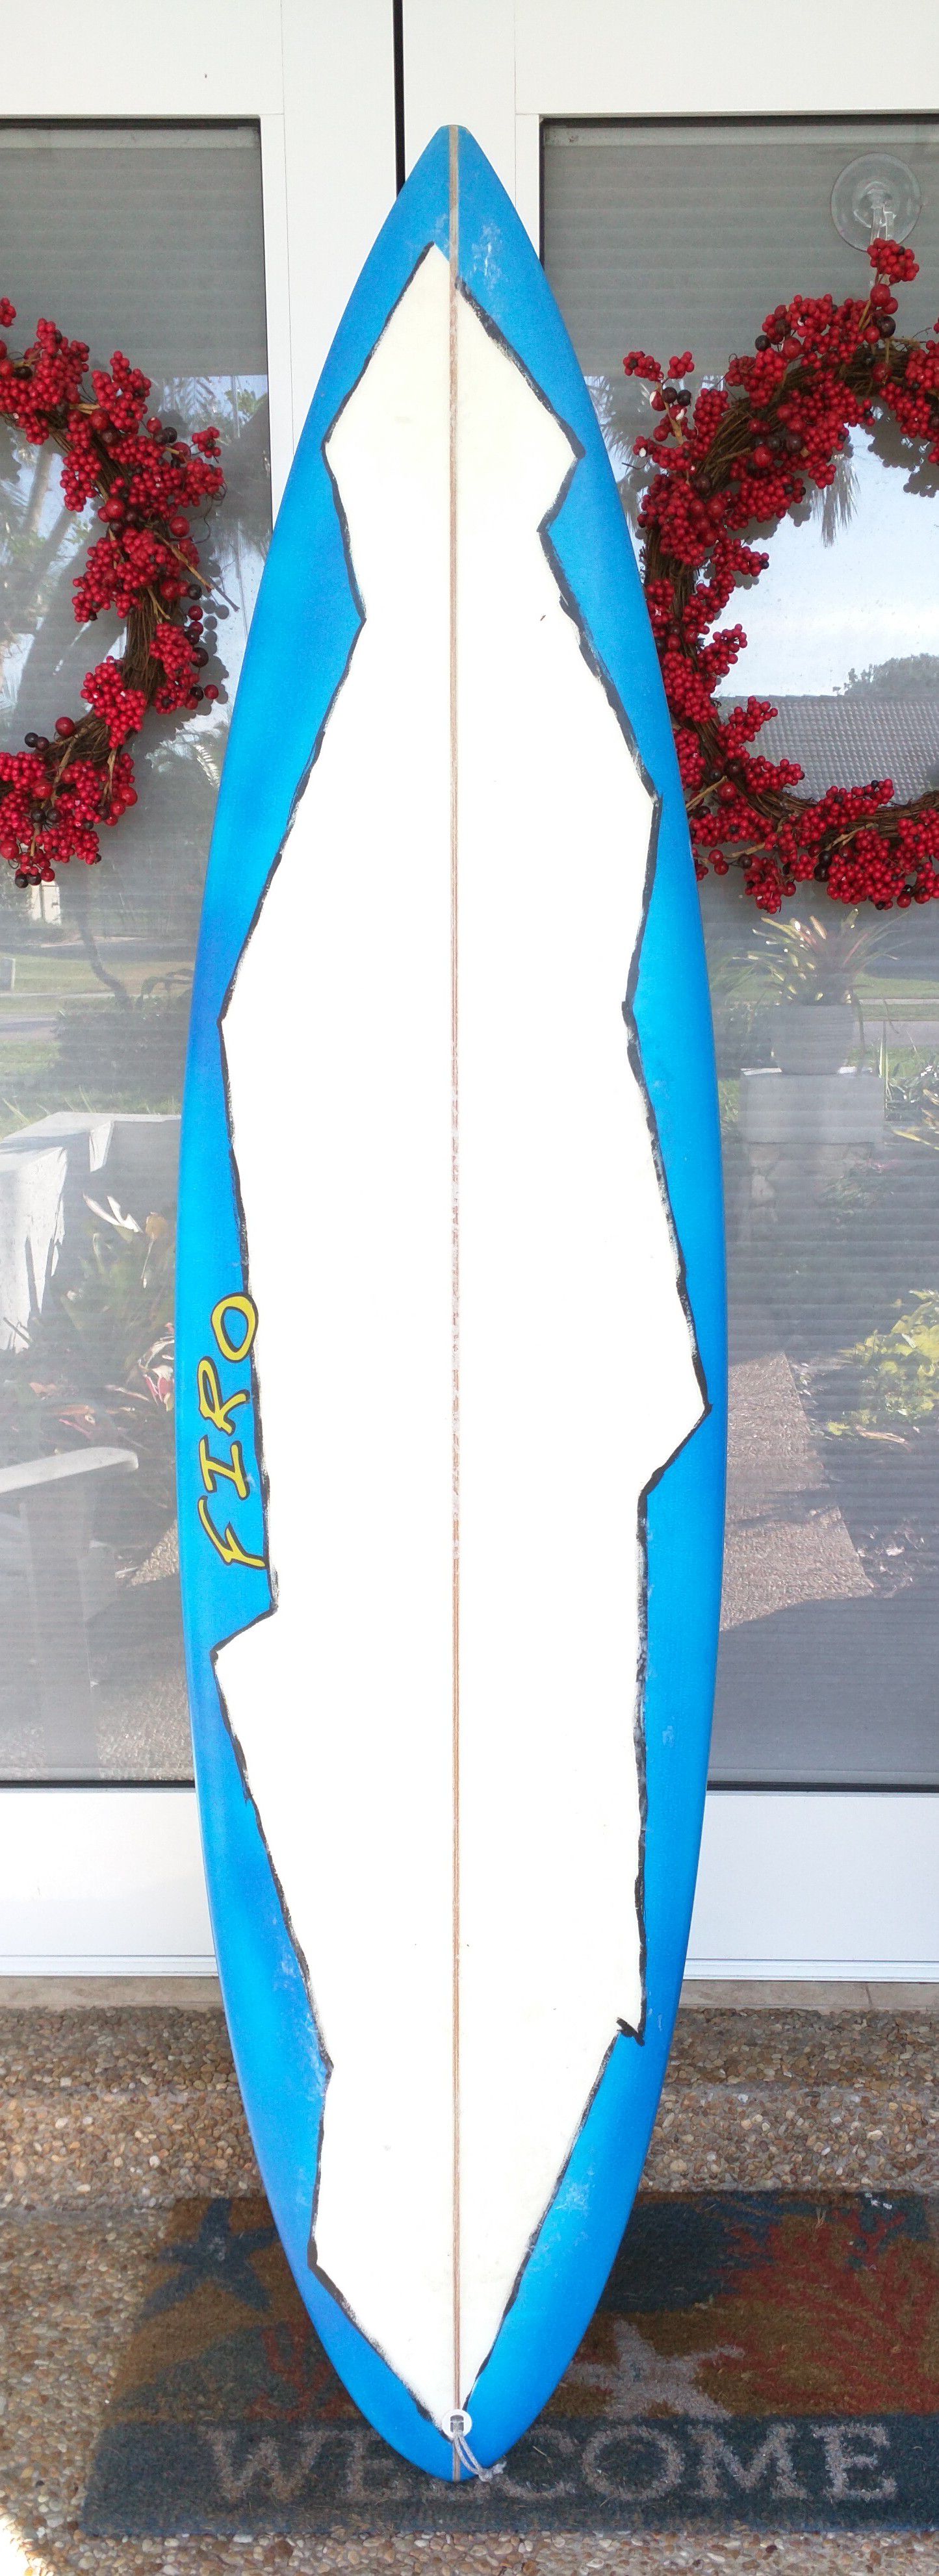 Firo thruster stepup surfboard 6' 6"